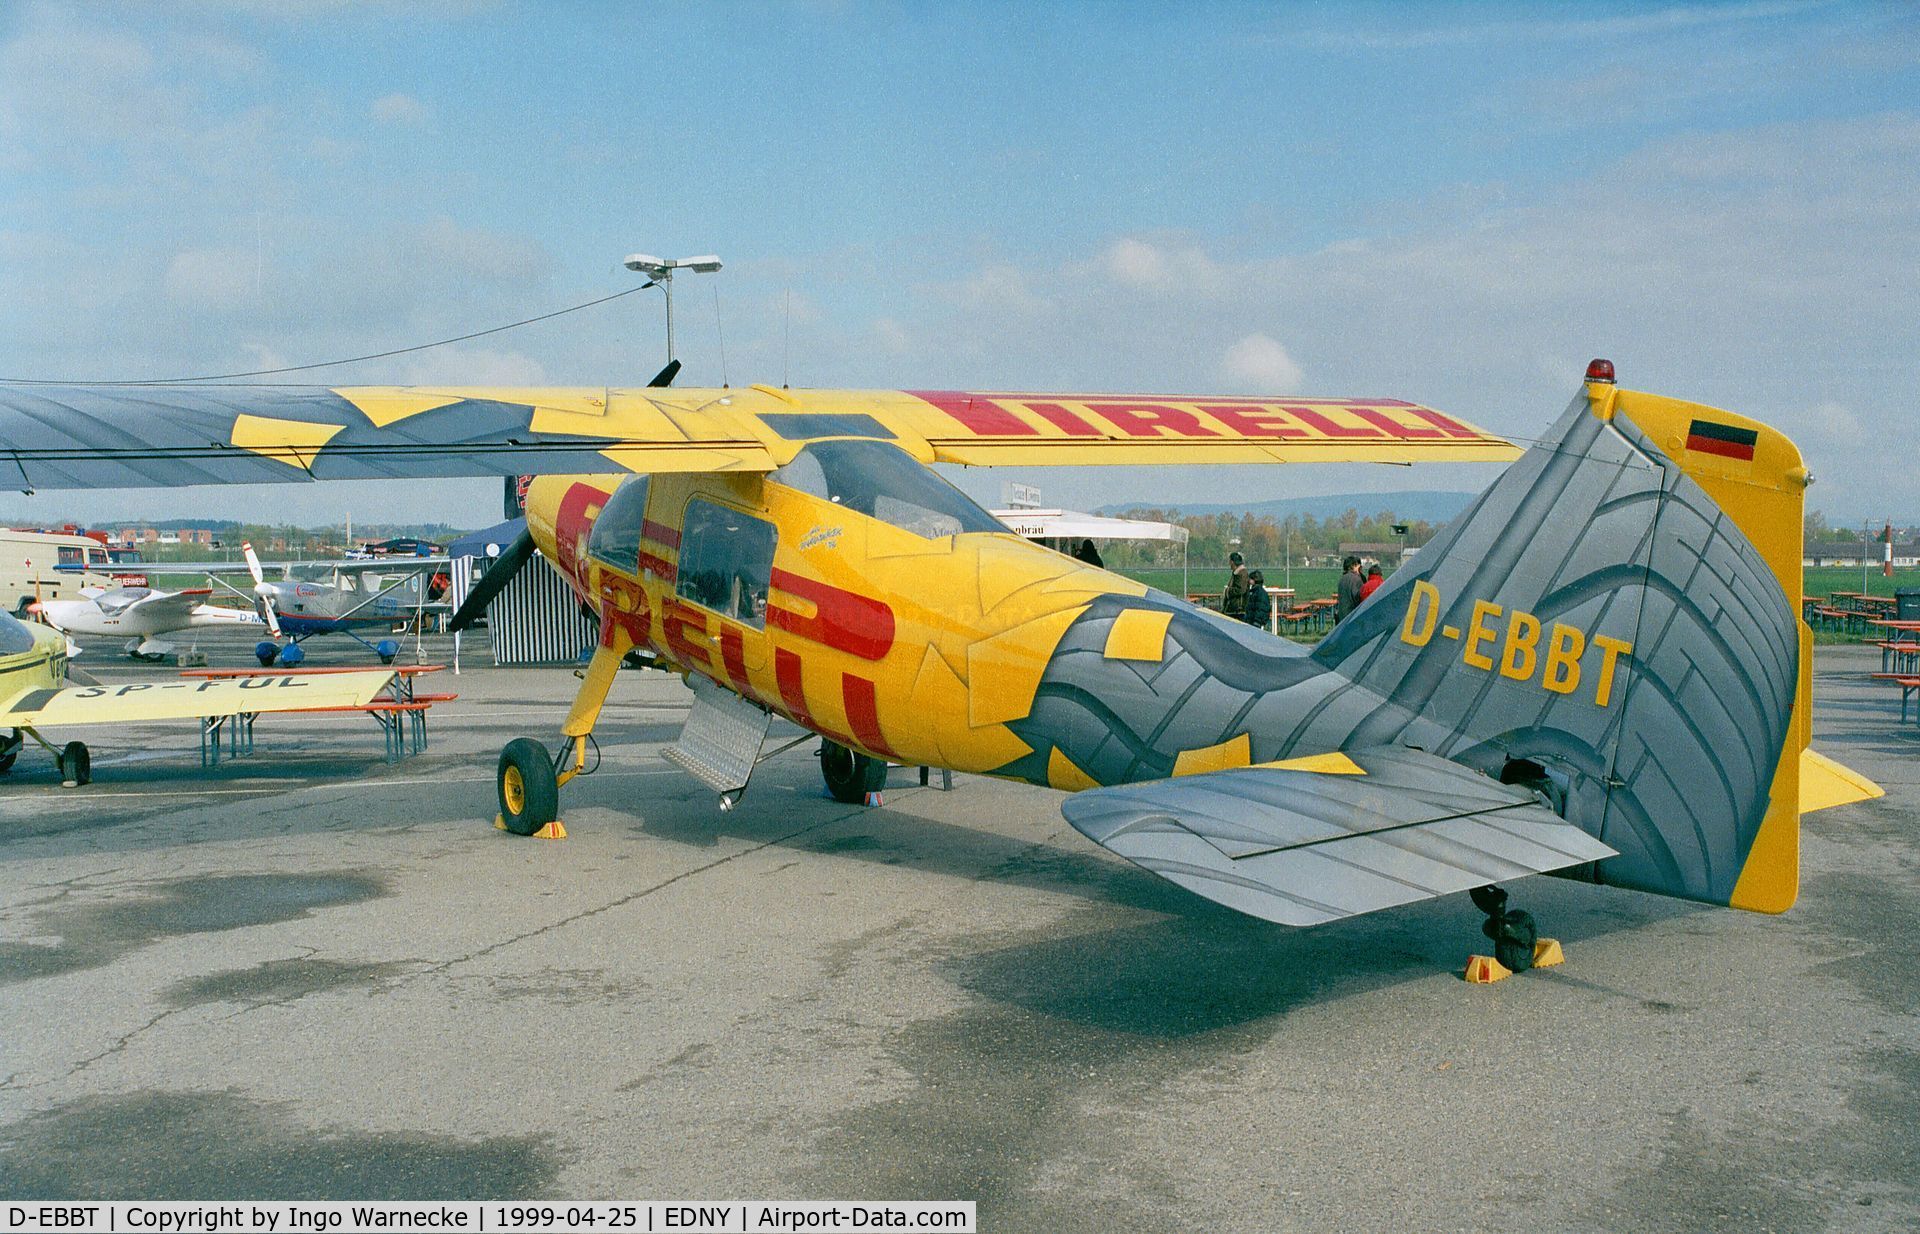 D-EBBT, Dornier Do-27A-1 C/N 185, Dornier Do 27A-1 at the Aero 1999, Friedrichshafen